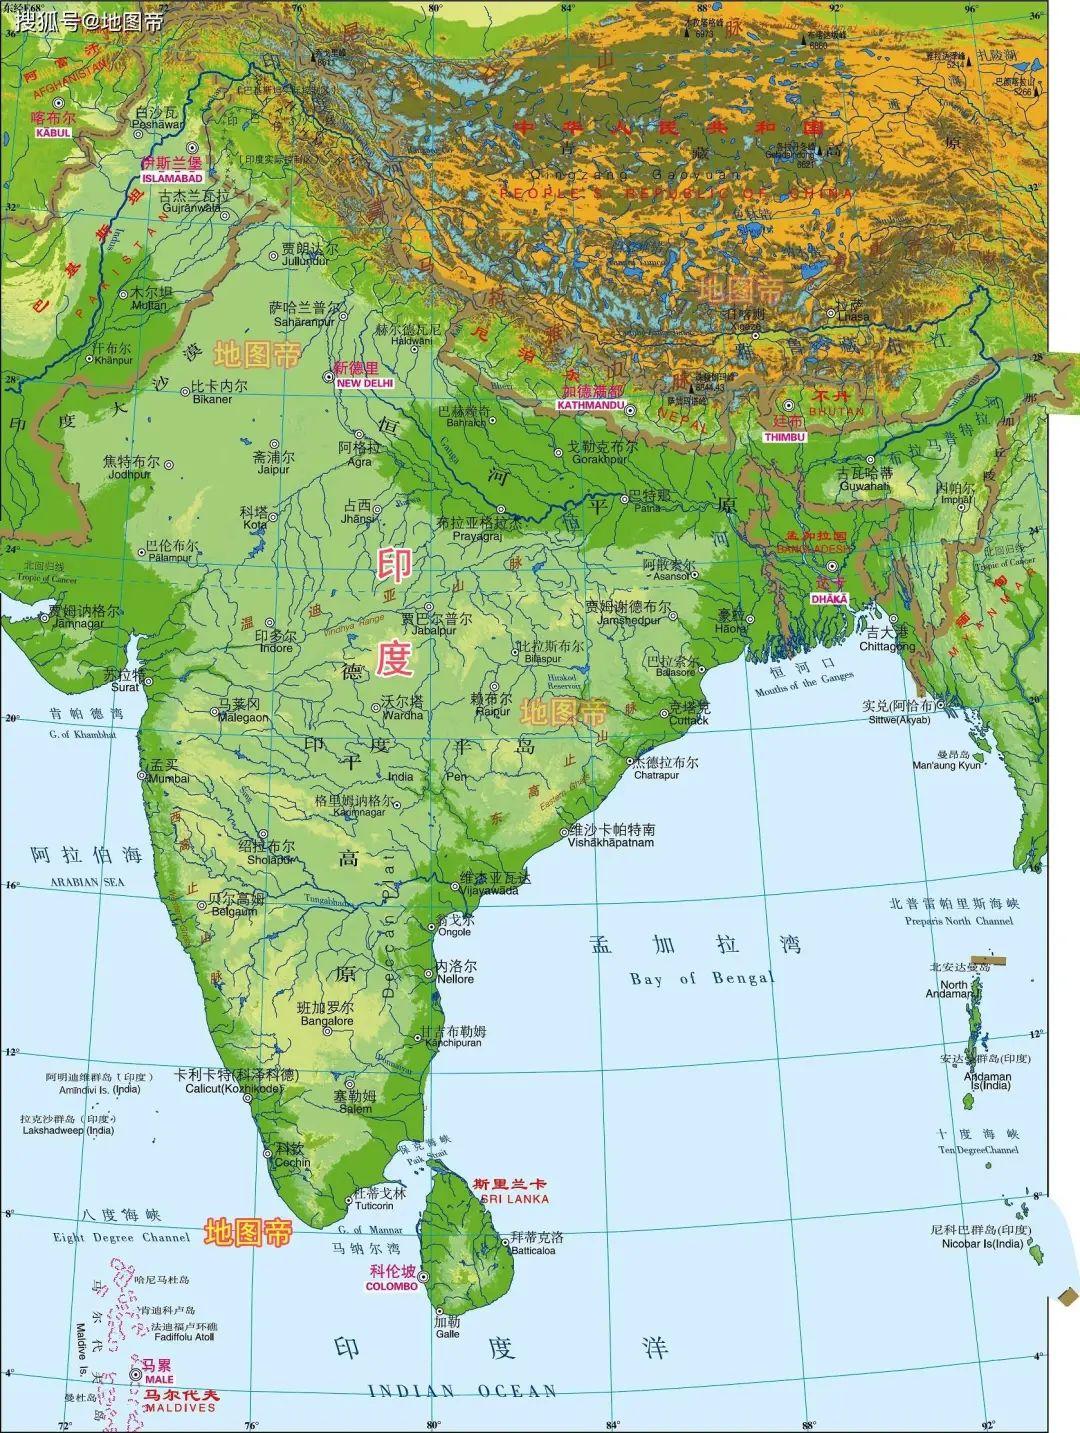 谭木地理课堂——图说地理系列 第二十六节 世界地理之印度（上）